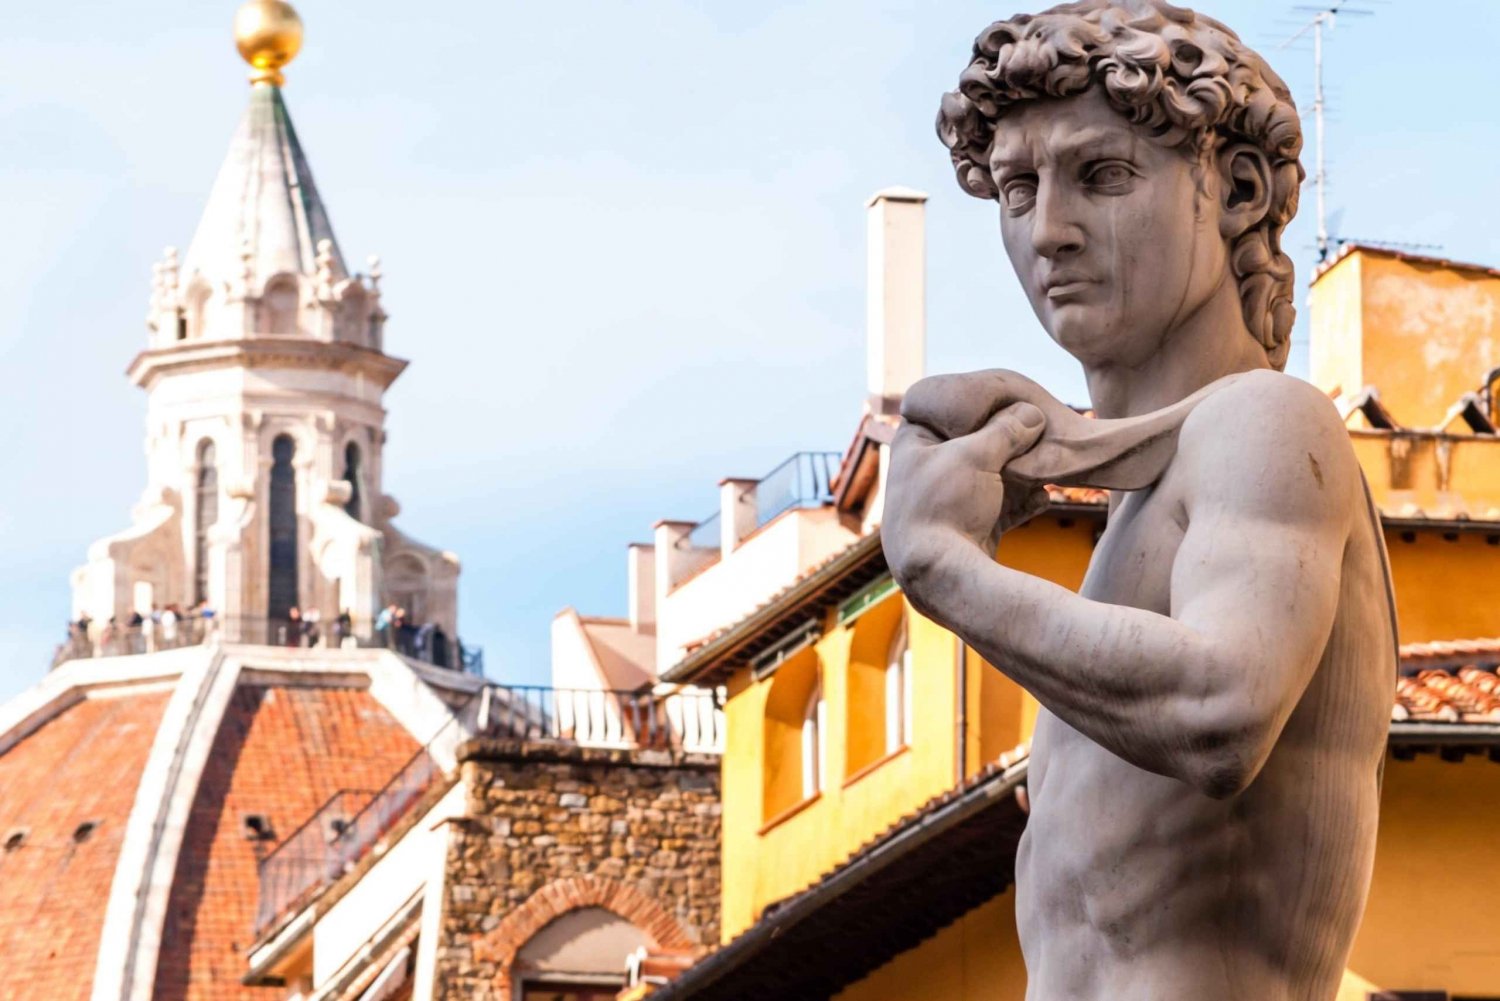 Florença: Ingresso para a Accademia e David com um anfitrião